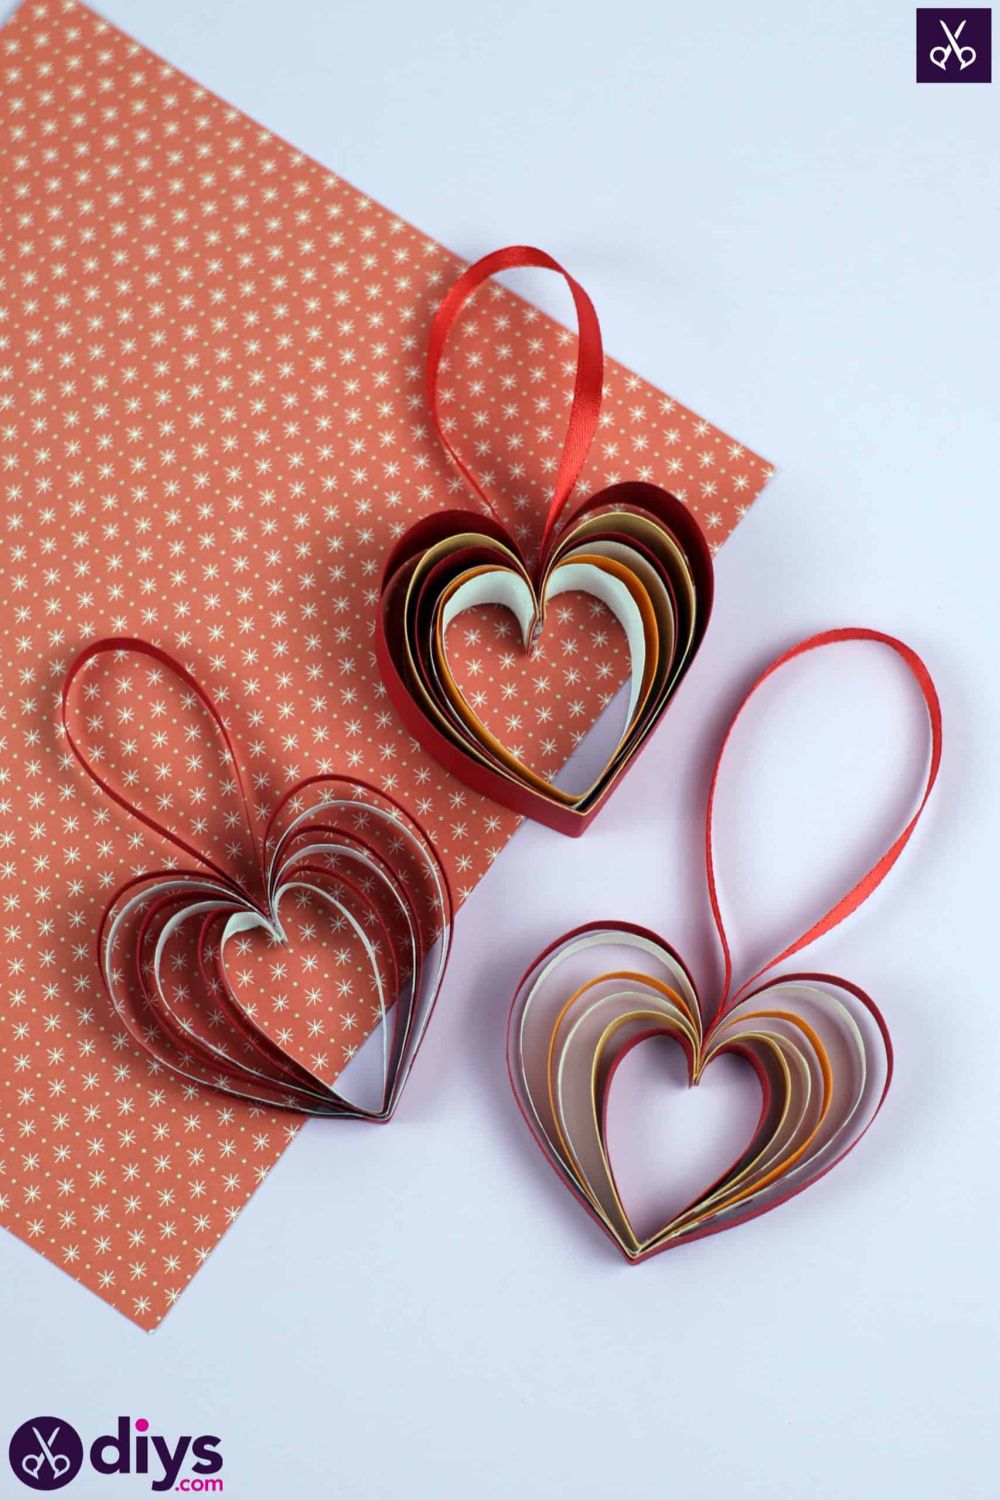 Hanging ribbon hearts